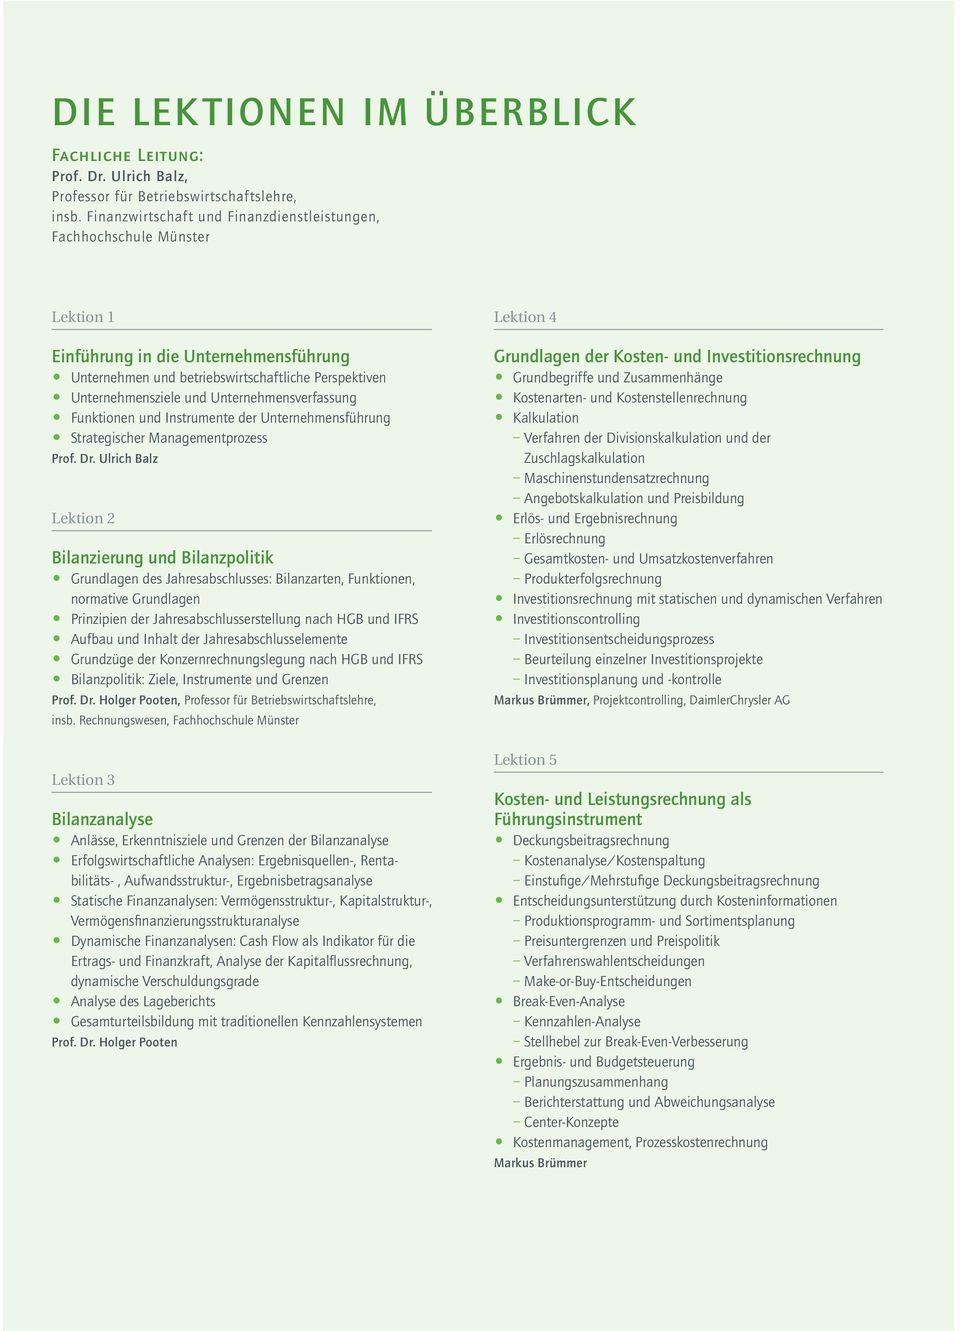 Unternehmensverfassung Funktionen und Instrumente der Unternehmensführung Strategischer Managementprozess Prof. Dr.